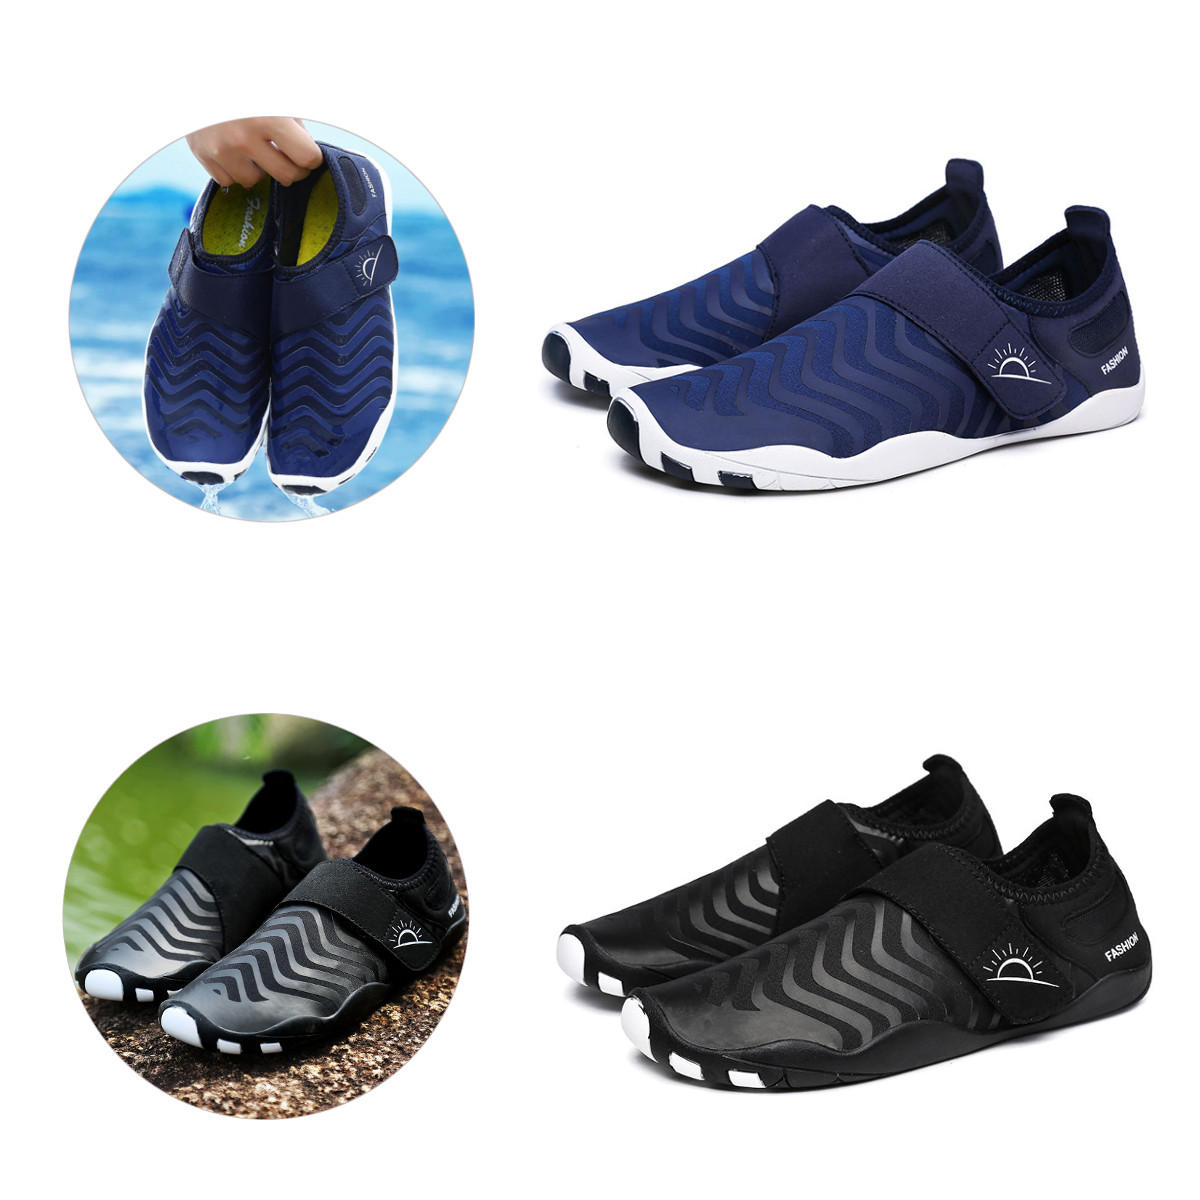 Sapatos de vadeo ultraleves listrados, secagem rápida, fáceis de calçar, ideais para esportes ao ar livre, natação e yoga.